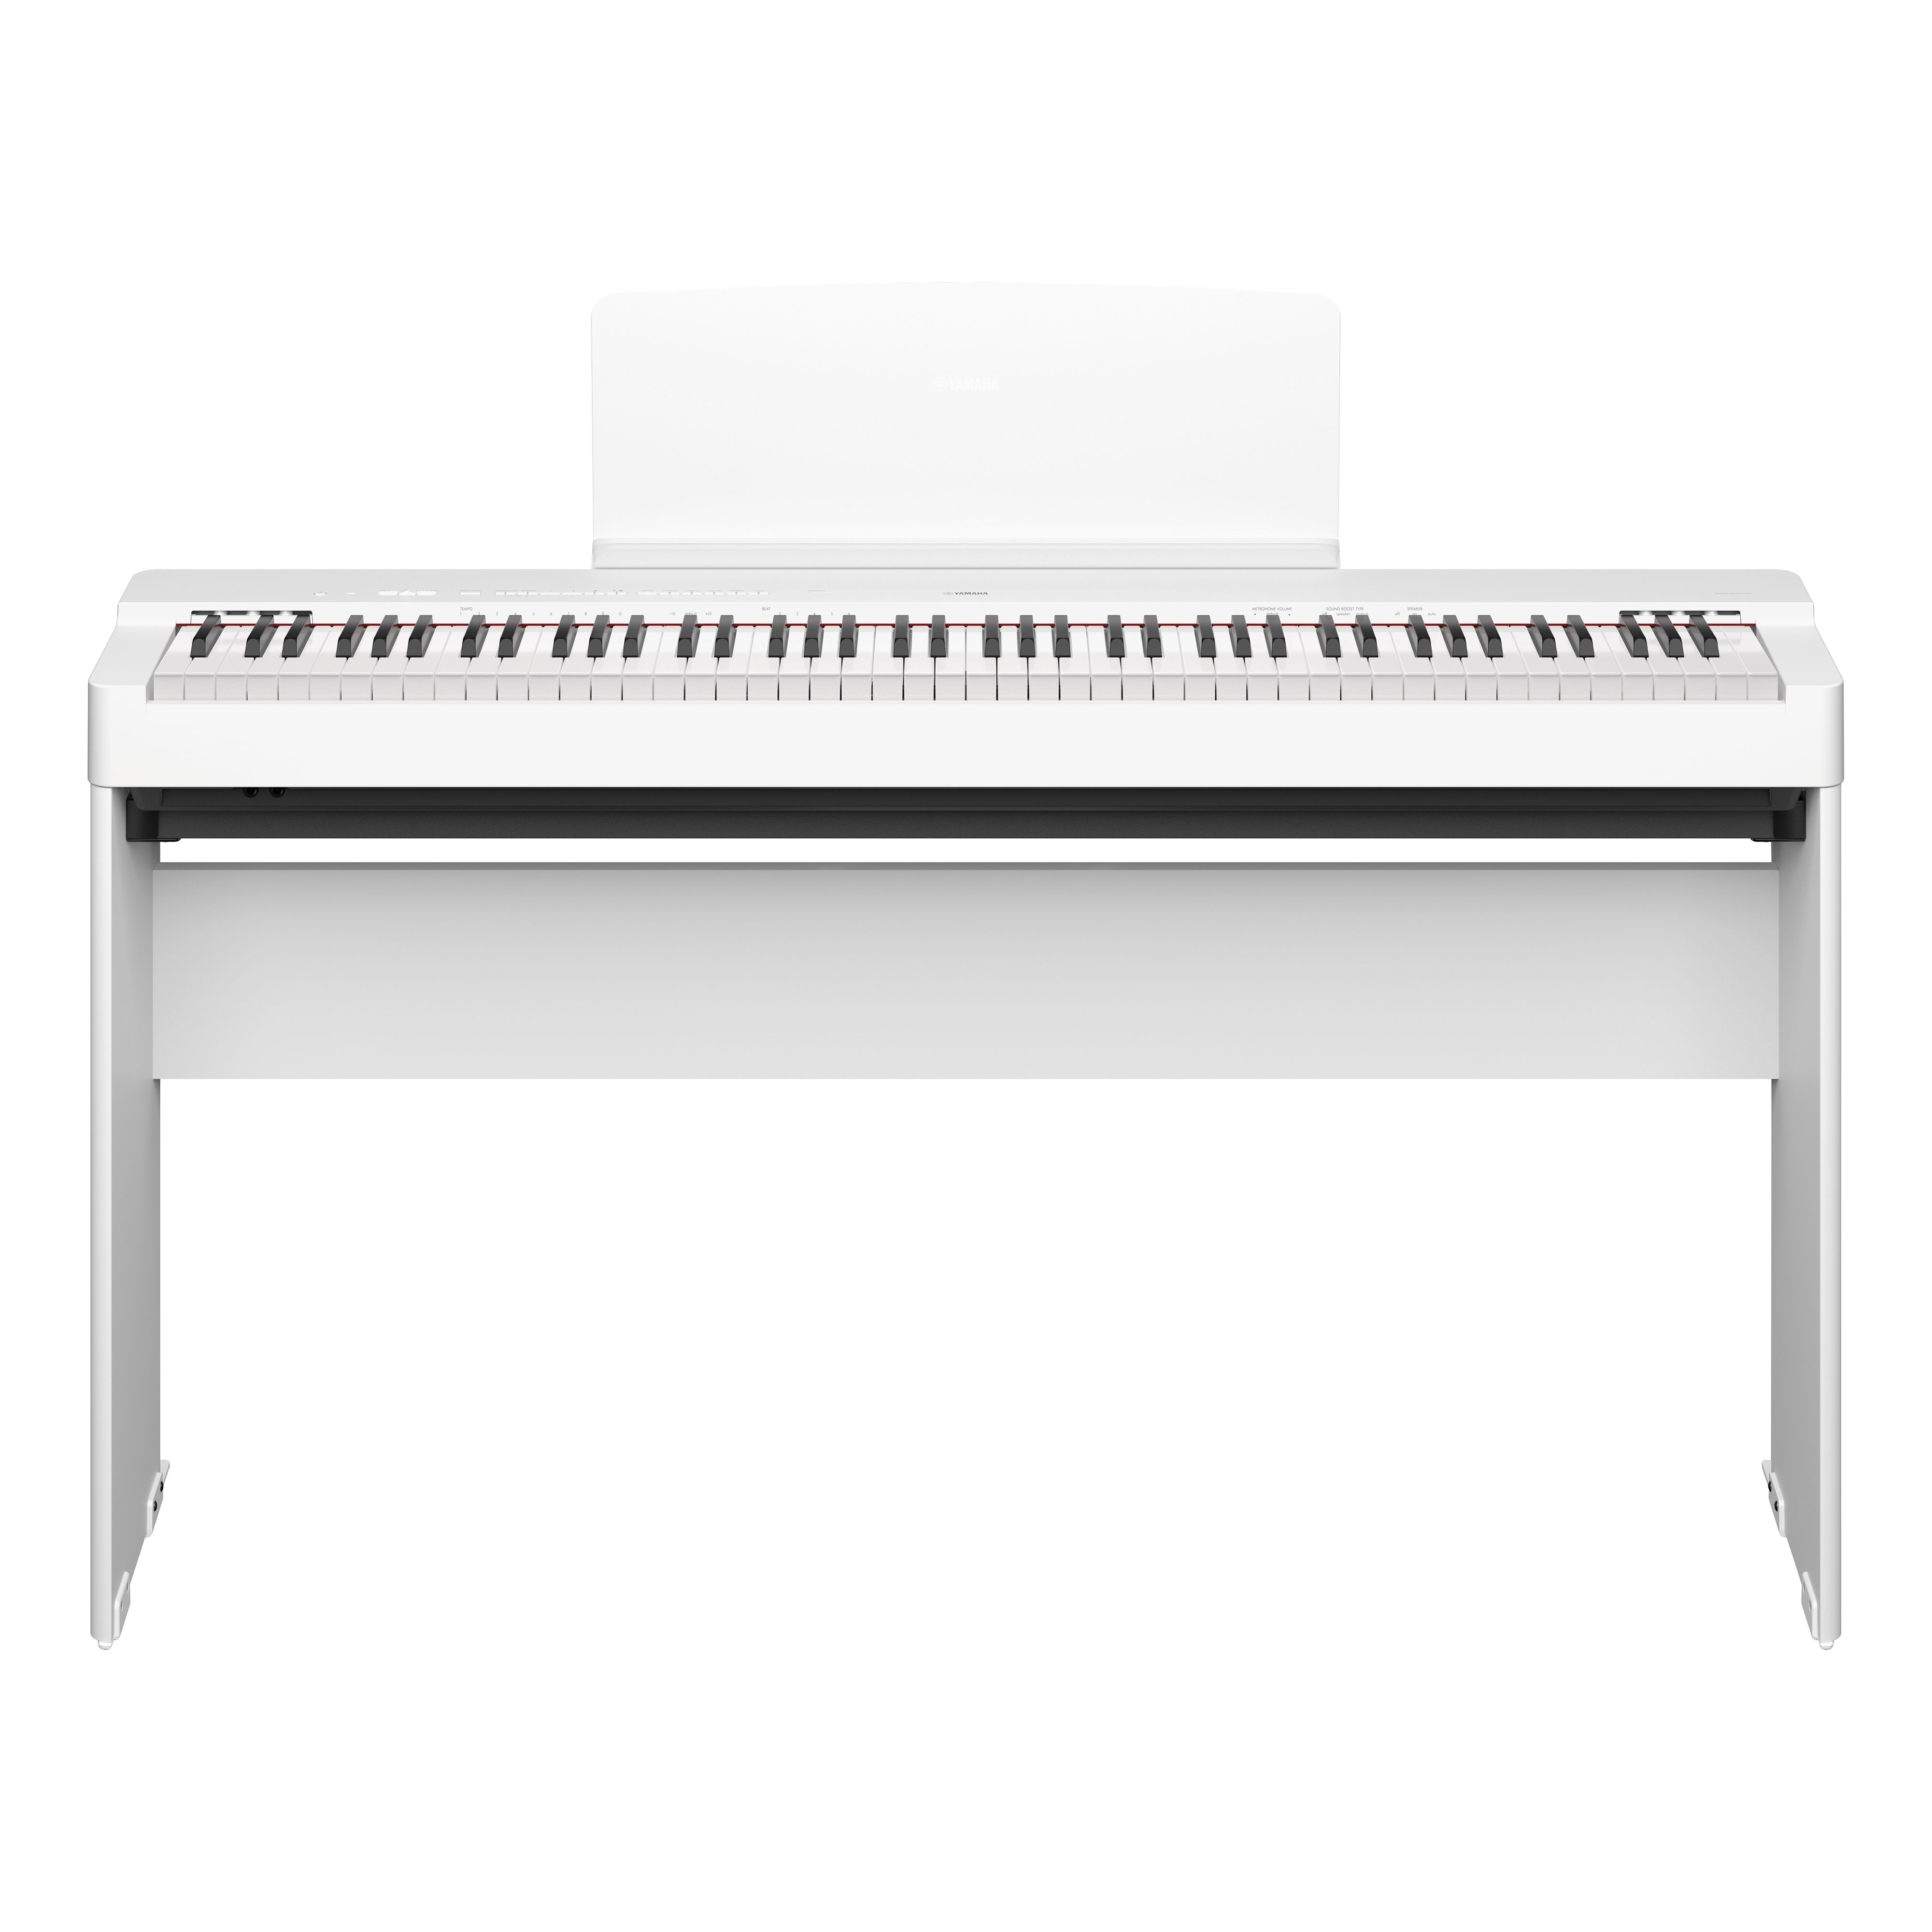 Pied stand KSC70 roland pour piano numérique FP30